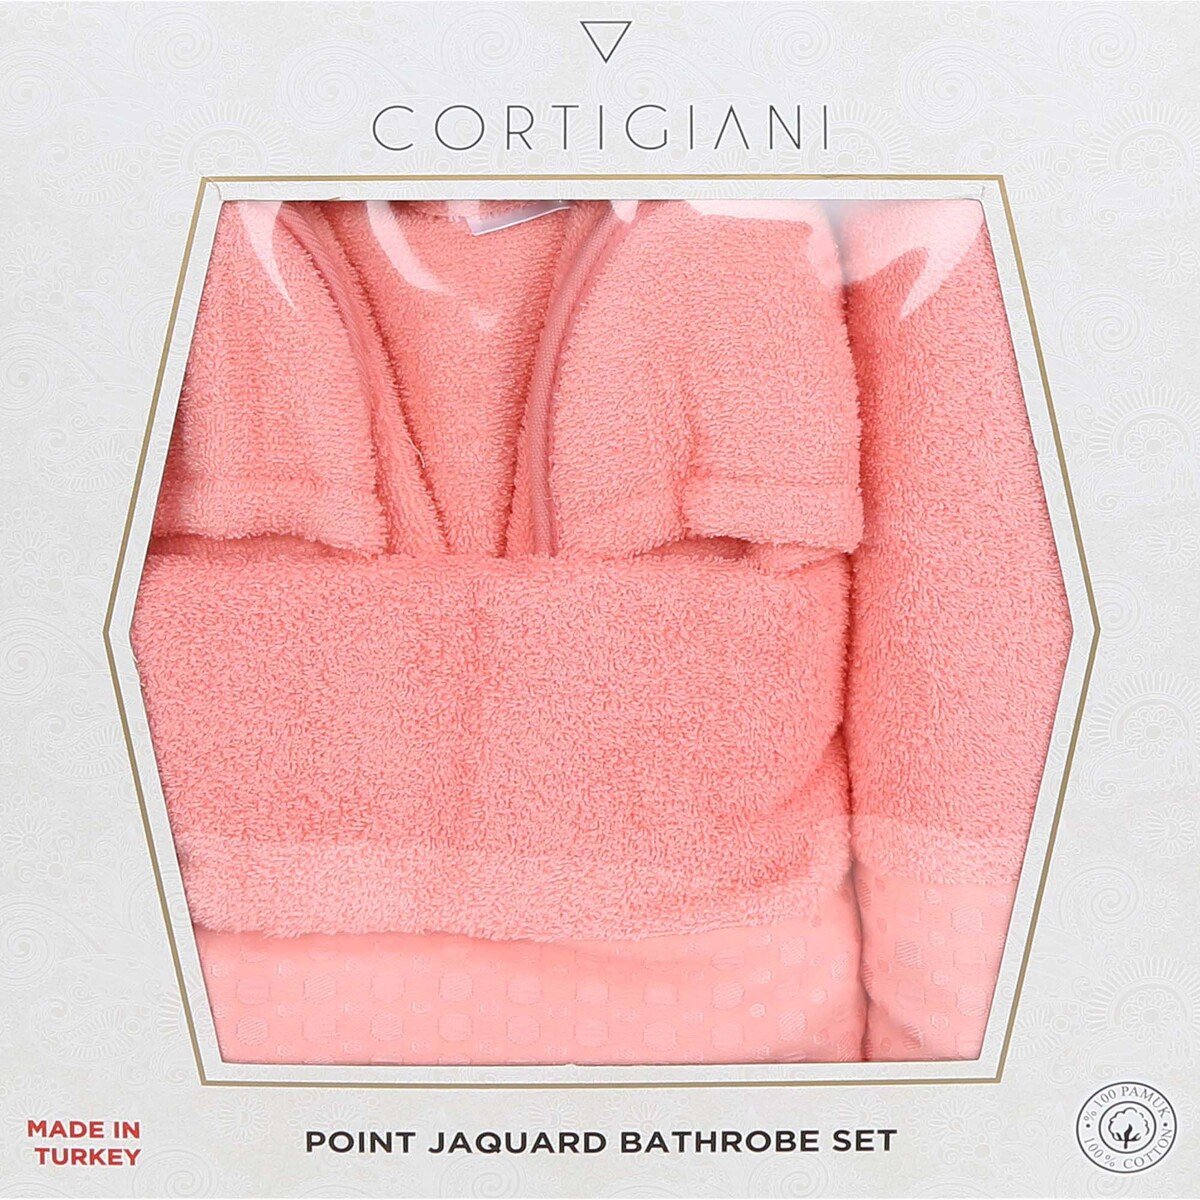 Cortigiani Bathrobe 4pcs Set BGNL02 Assorted Colors